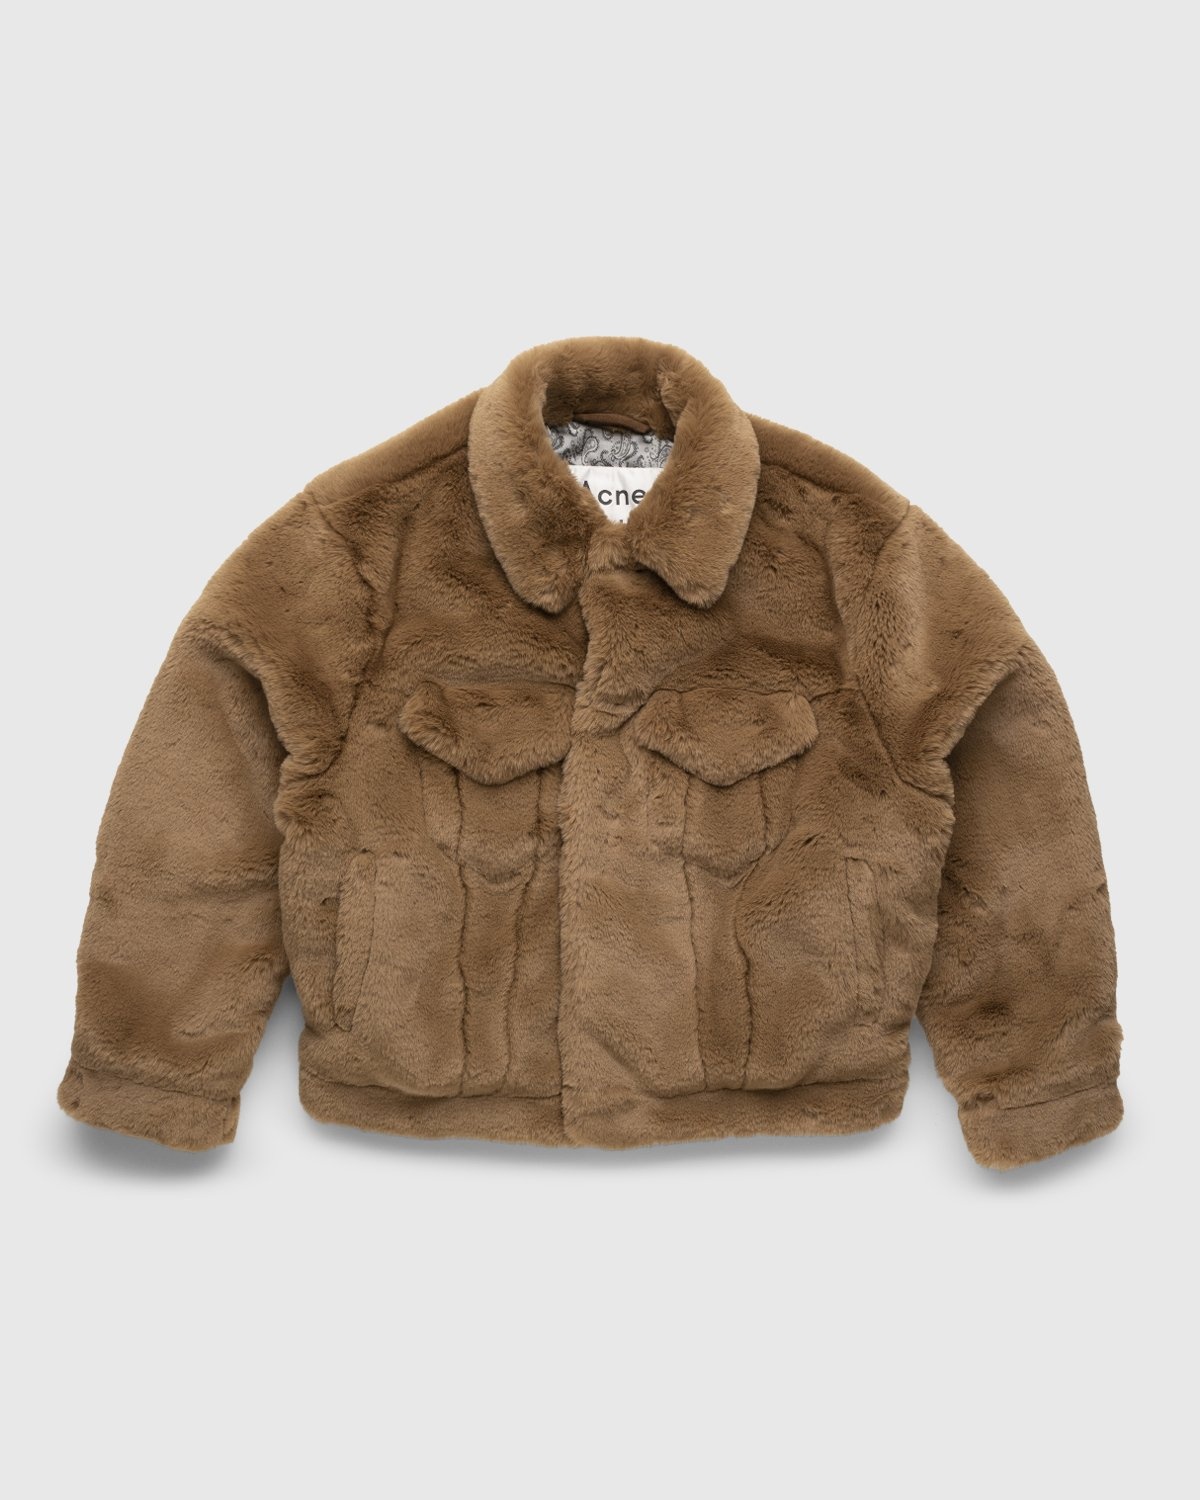 Acne Studios – Boxy Faux Fur Jacket Beige - Outerwear - Beige - Image 1